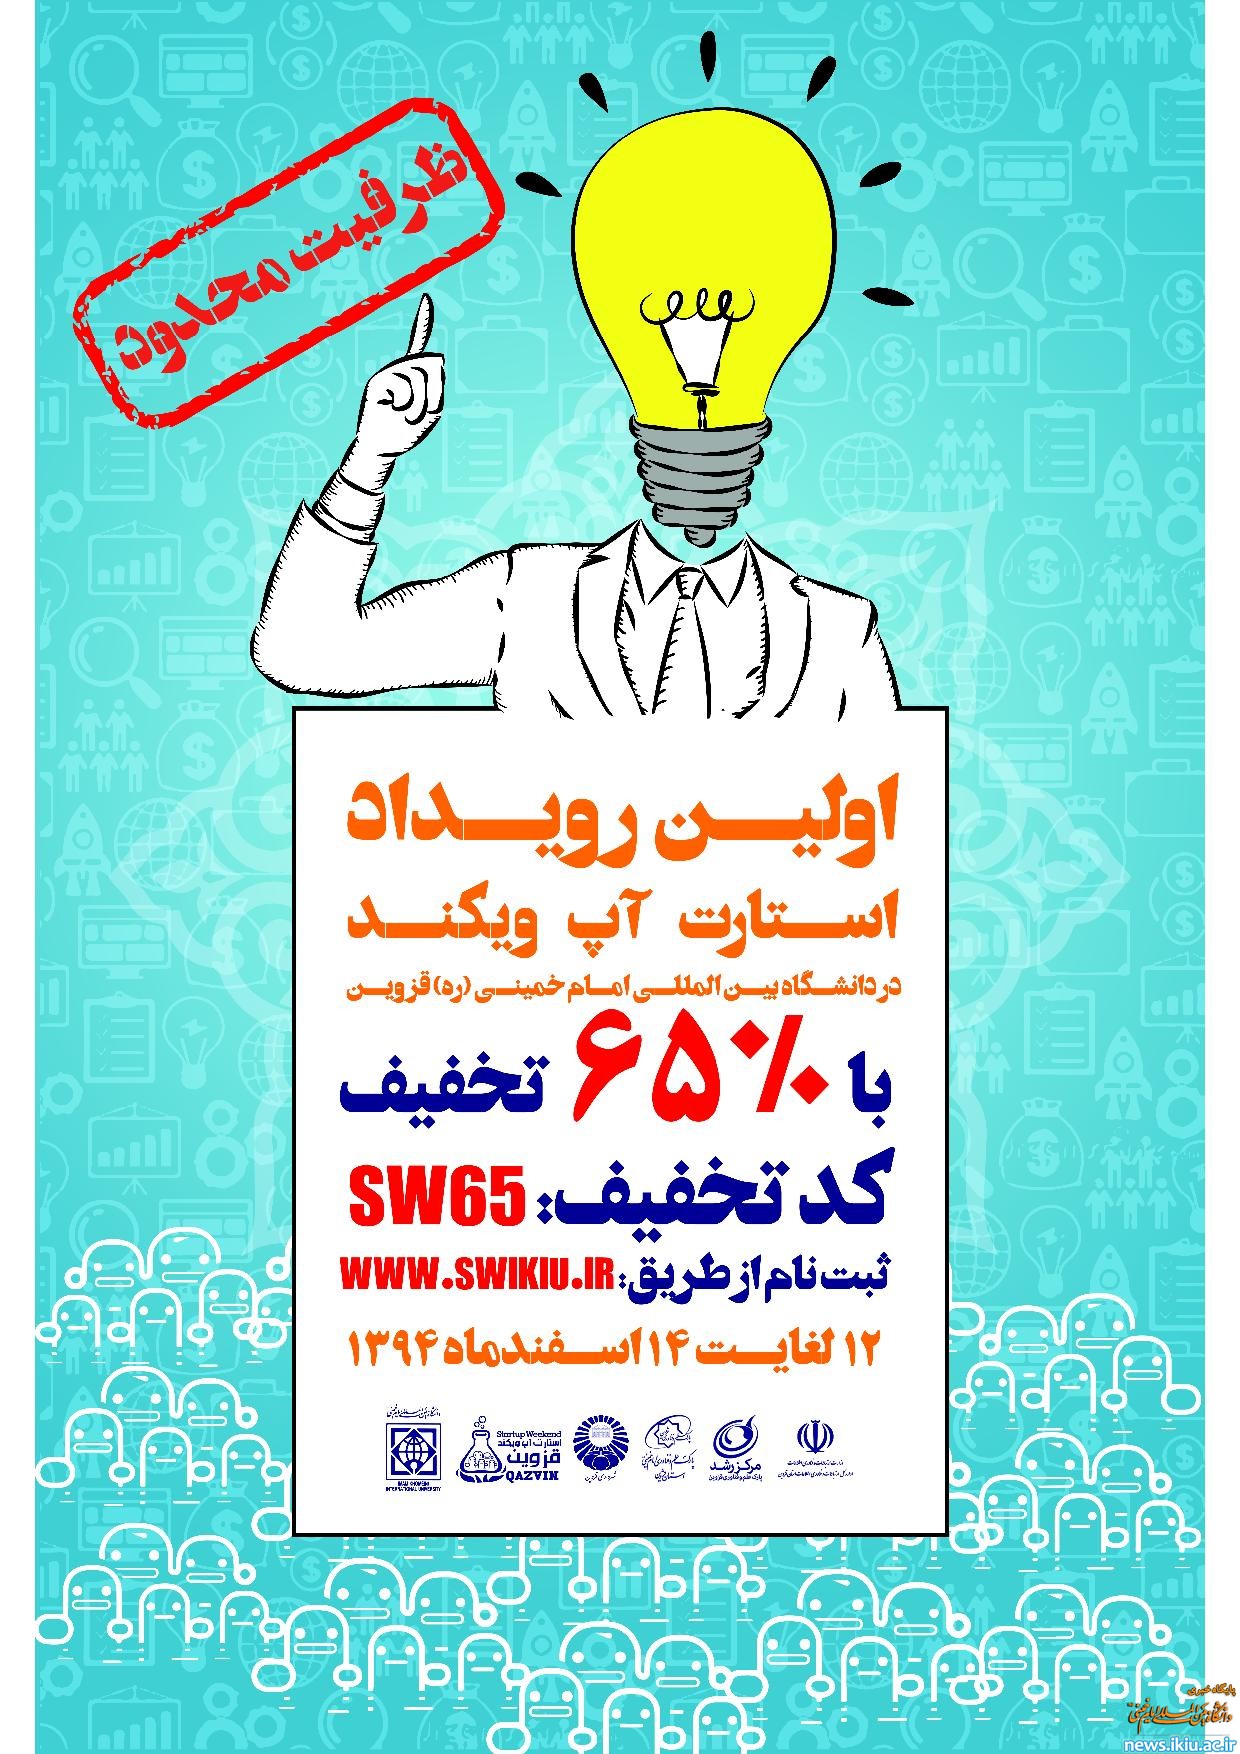 اطلاعیه برگزاری مسابقه استارتاپ ویکند در دانشگاه بین المللی امام خمینی(ره)